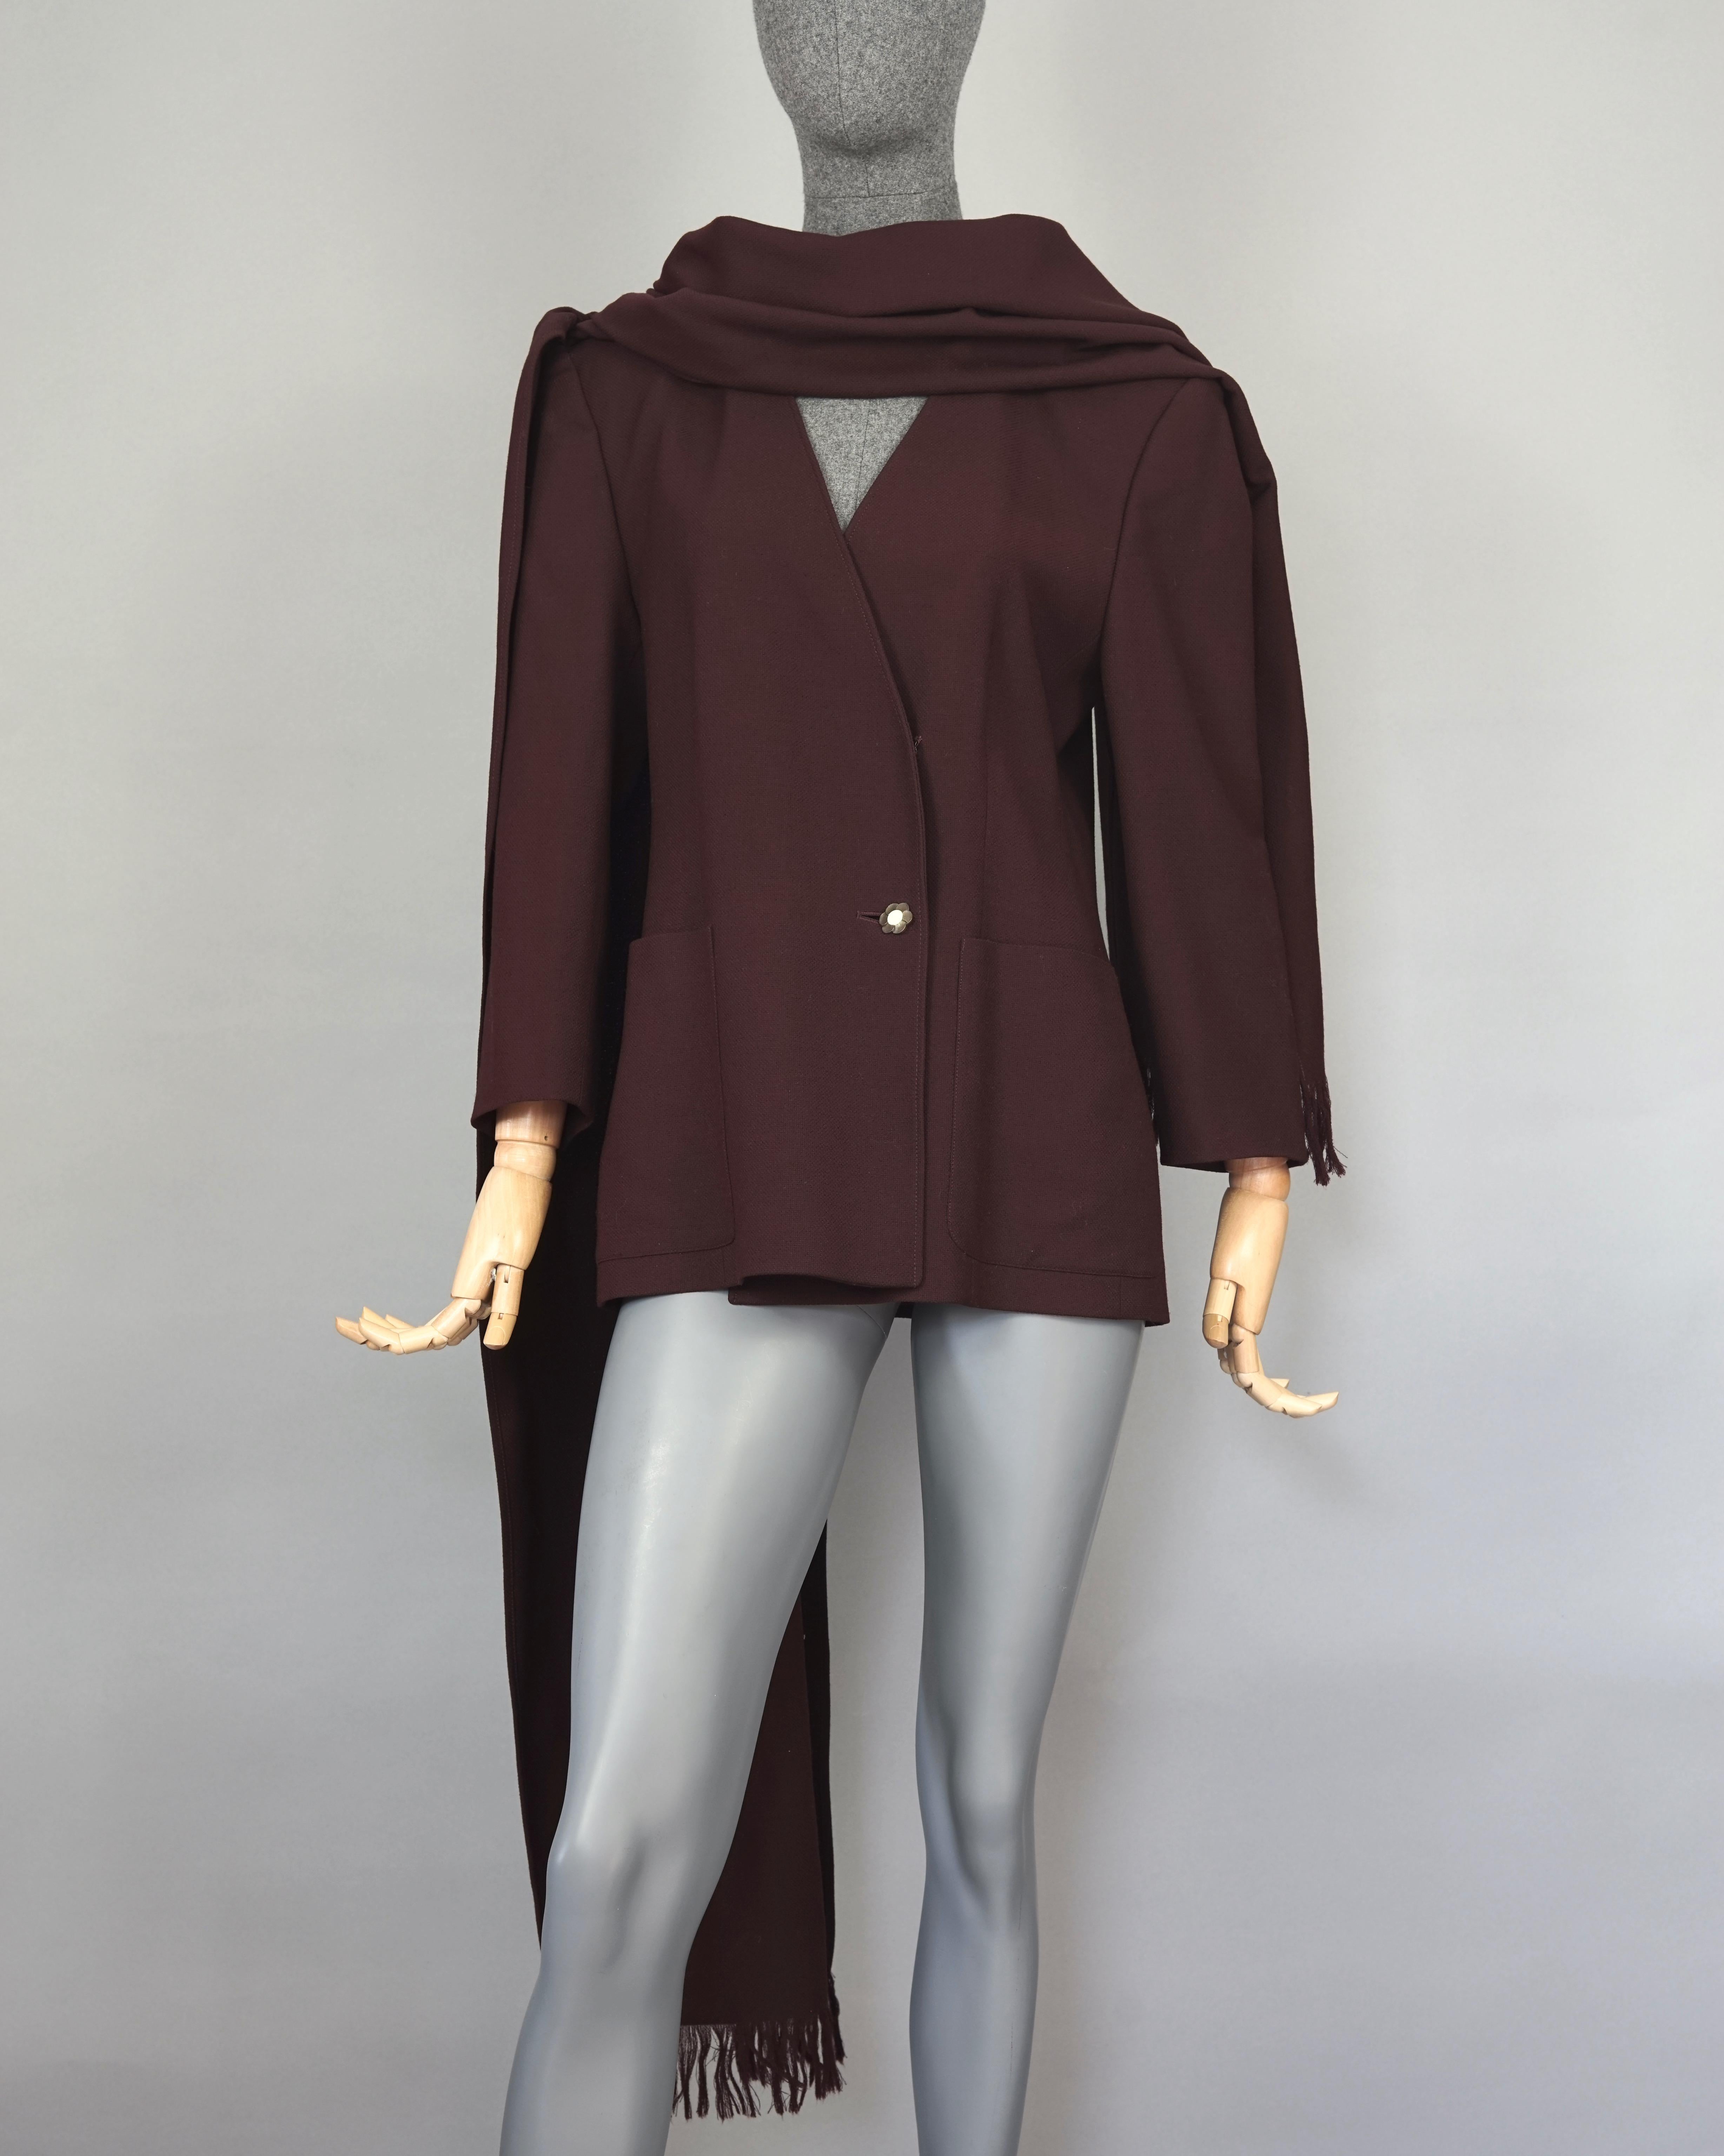 Vintage CRISTIAN LACROIX Shoulder Shawl Wrap Blazer Jacket

Measurements taken laid flat, please double bust and waist:
Shoulder: 16.14 inches (41 cm)
Sleeves: 20.27 inches (51.5 cm)
Bust: 18.11 inches (46 cm)
Waist: 16.73 inches (42.5 cm)
Length: